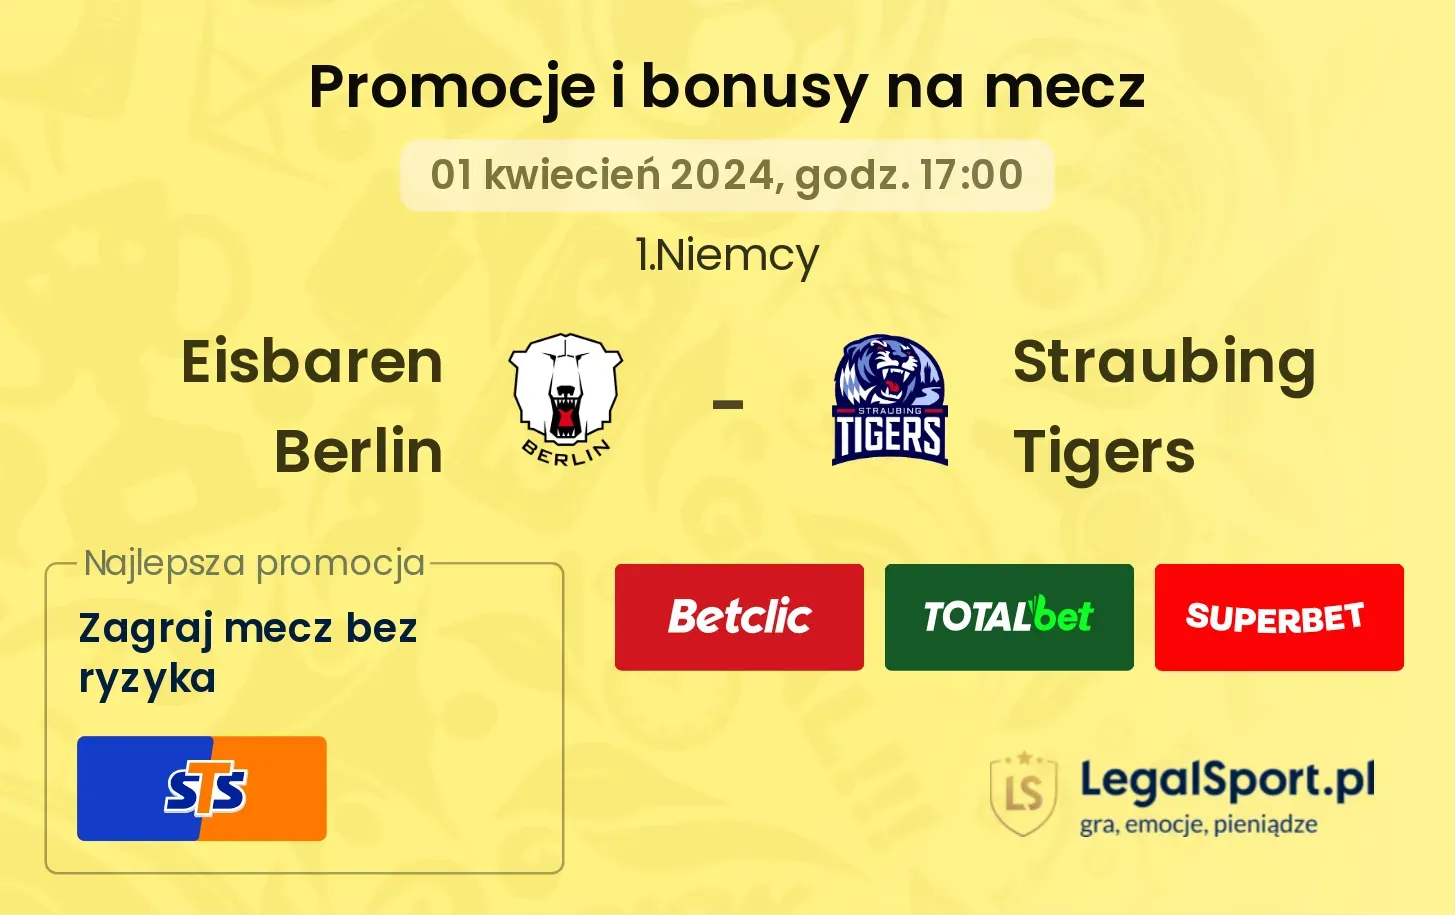  Eisbaren Berlin -  Straubing Tigers promocje bonusy na mecz